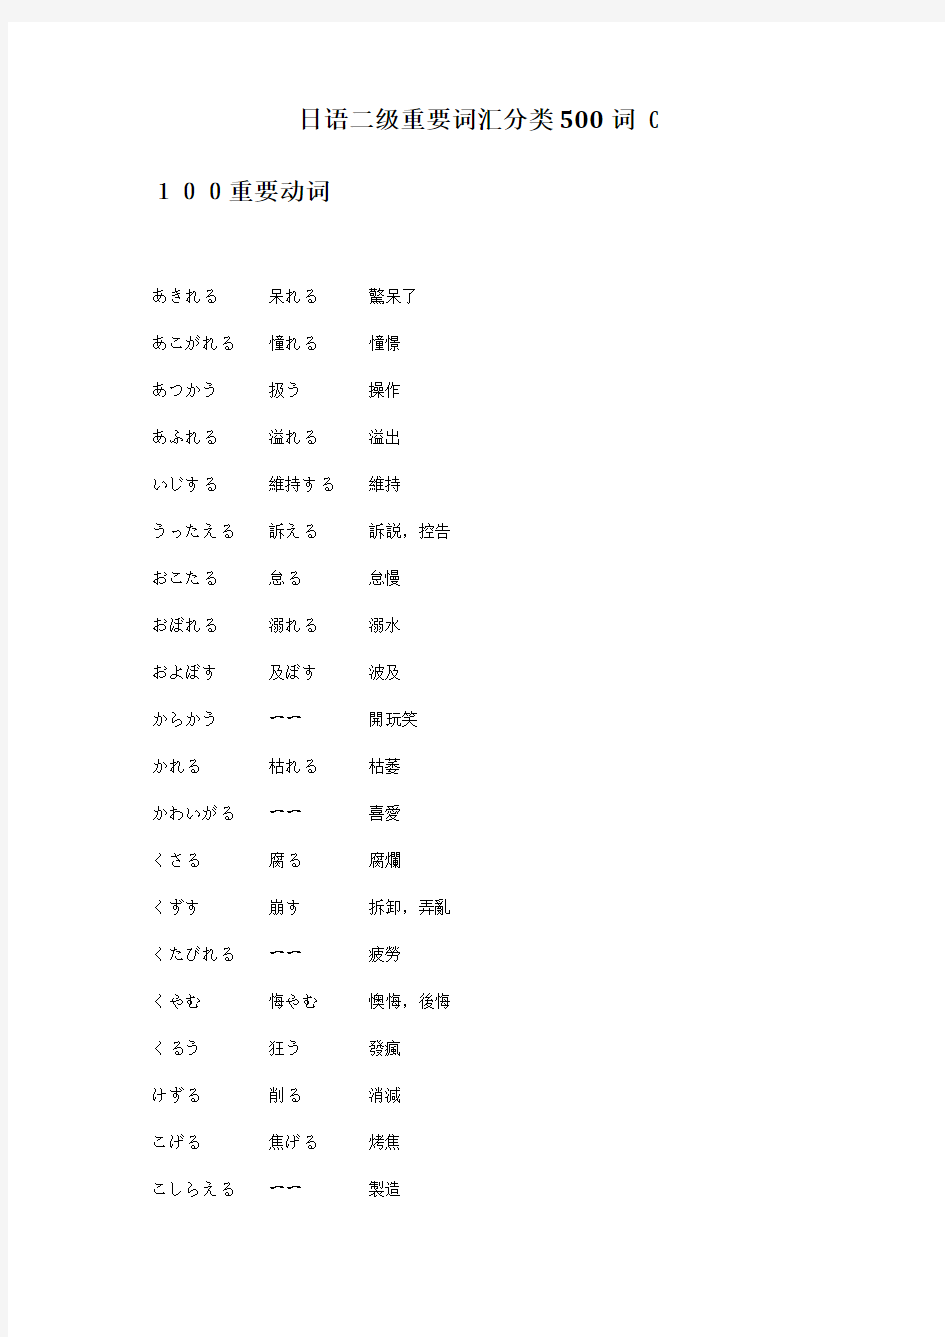 日语二级重要词汇分类500词_C